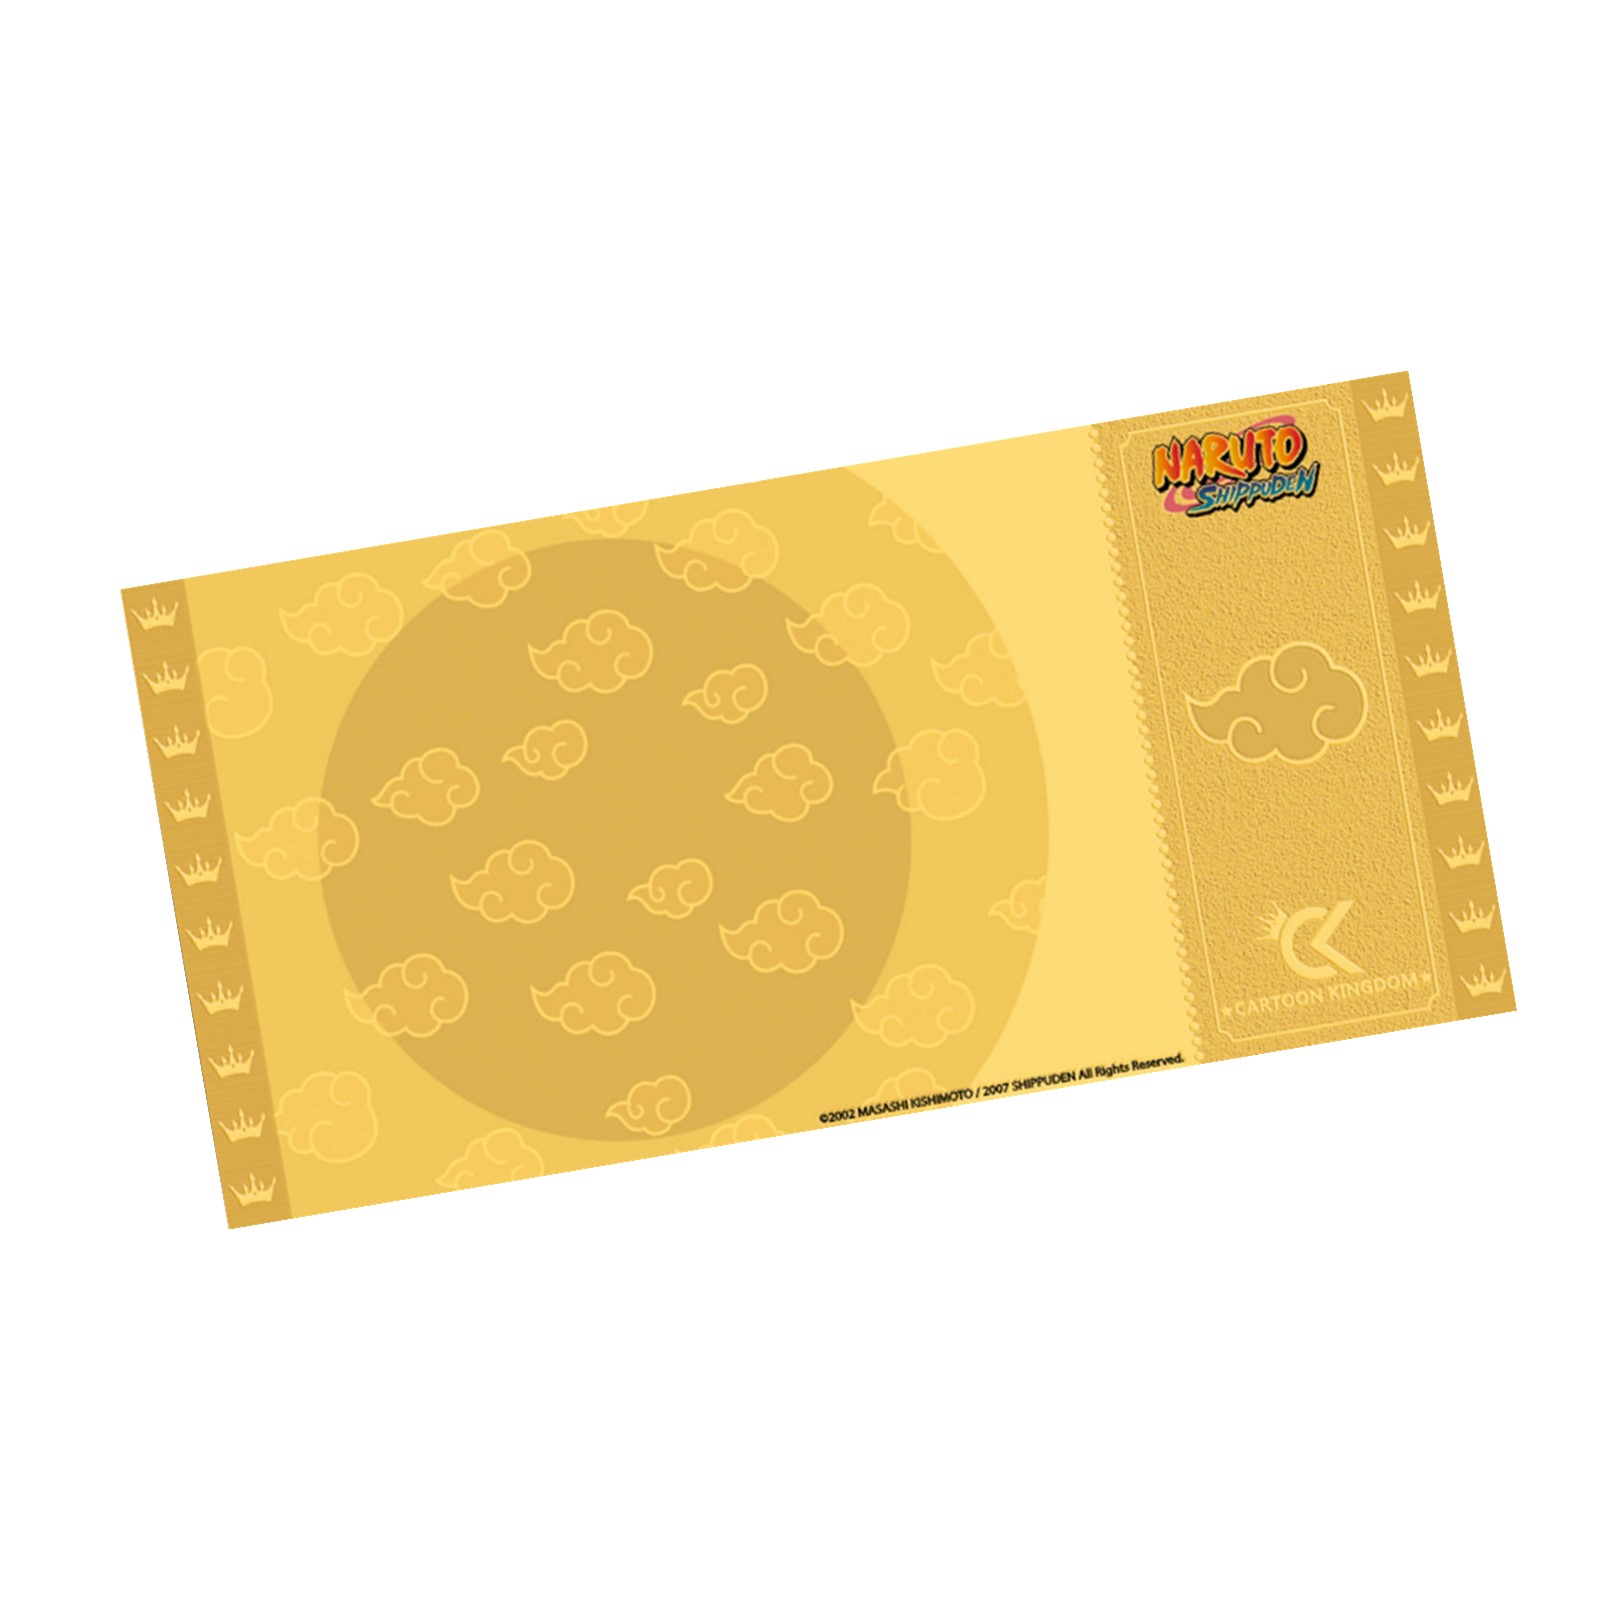 Golden Ticket Naruto Collection 2 ITACHI